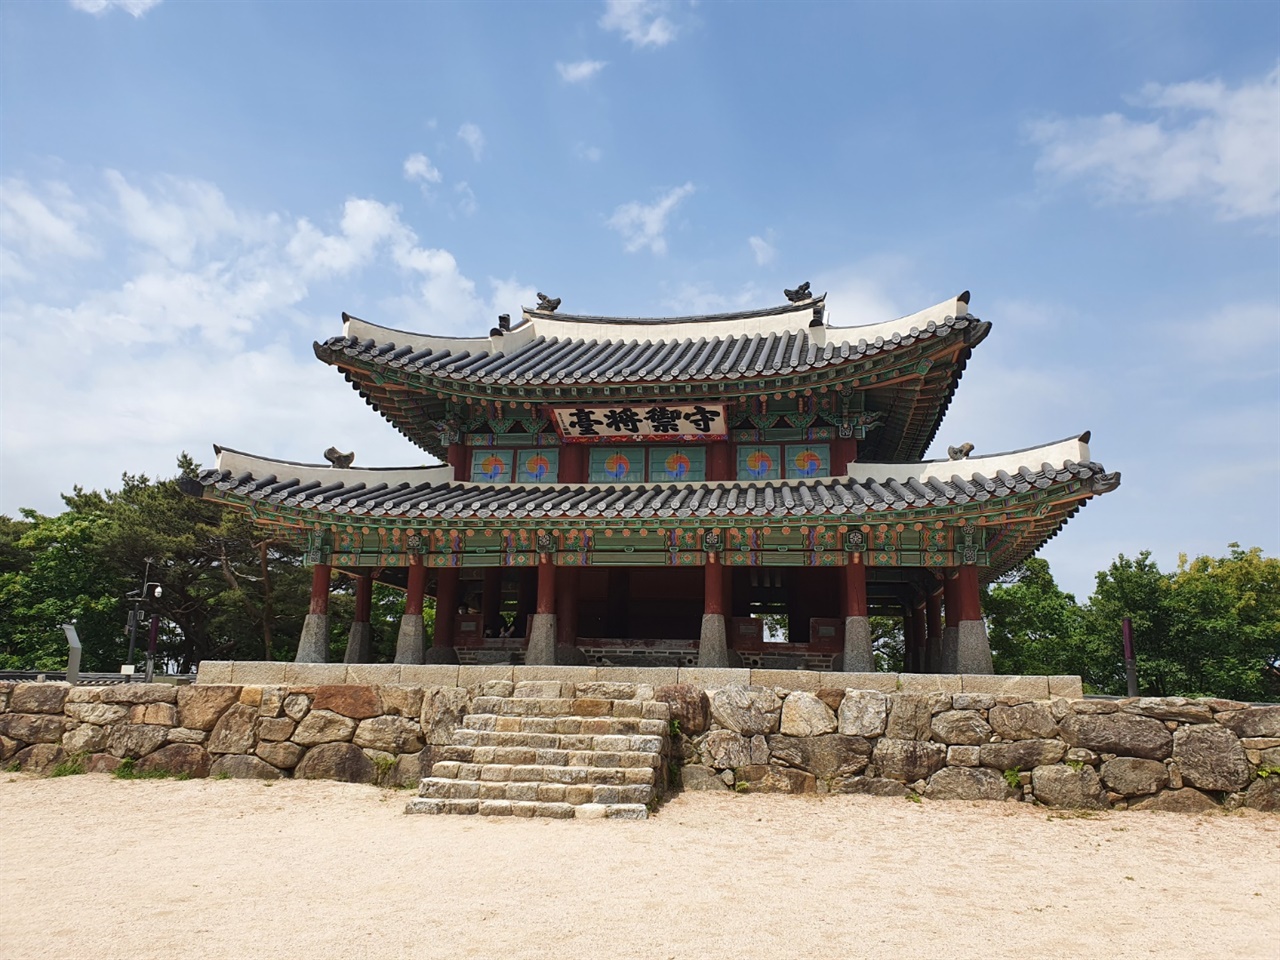 남한산성의 랜드마크인 수어장대는 장수의 지휘와 관측을 위한 군사적 목적으로 건립되었으며 같이 지어졌던 5개의 장대 중에 유일하게 남아있다.